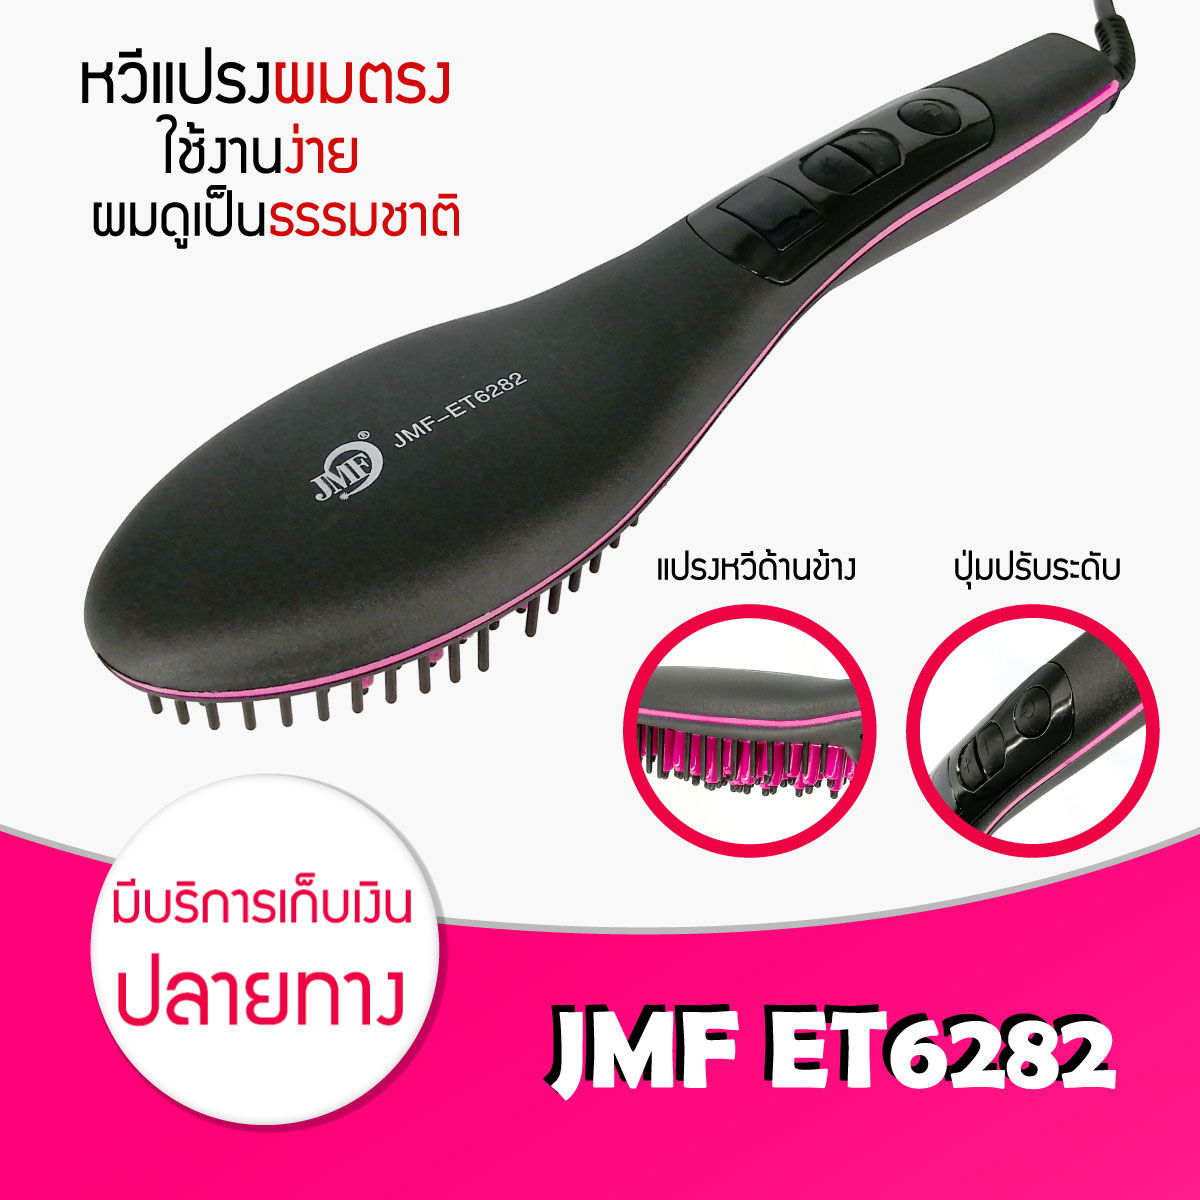 หวีรีดตรงไฟฟ้า JMF ET6282 แปรงหวีไฟฟ้าผมตรง Fast Hair Straightener